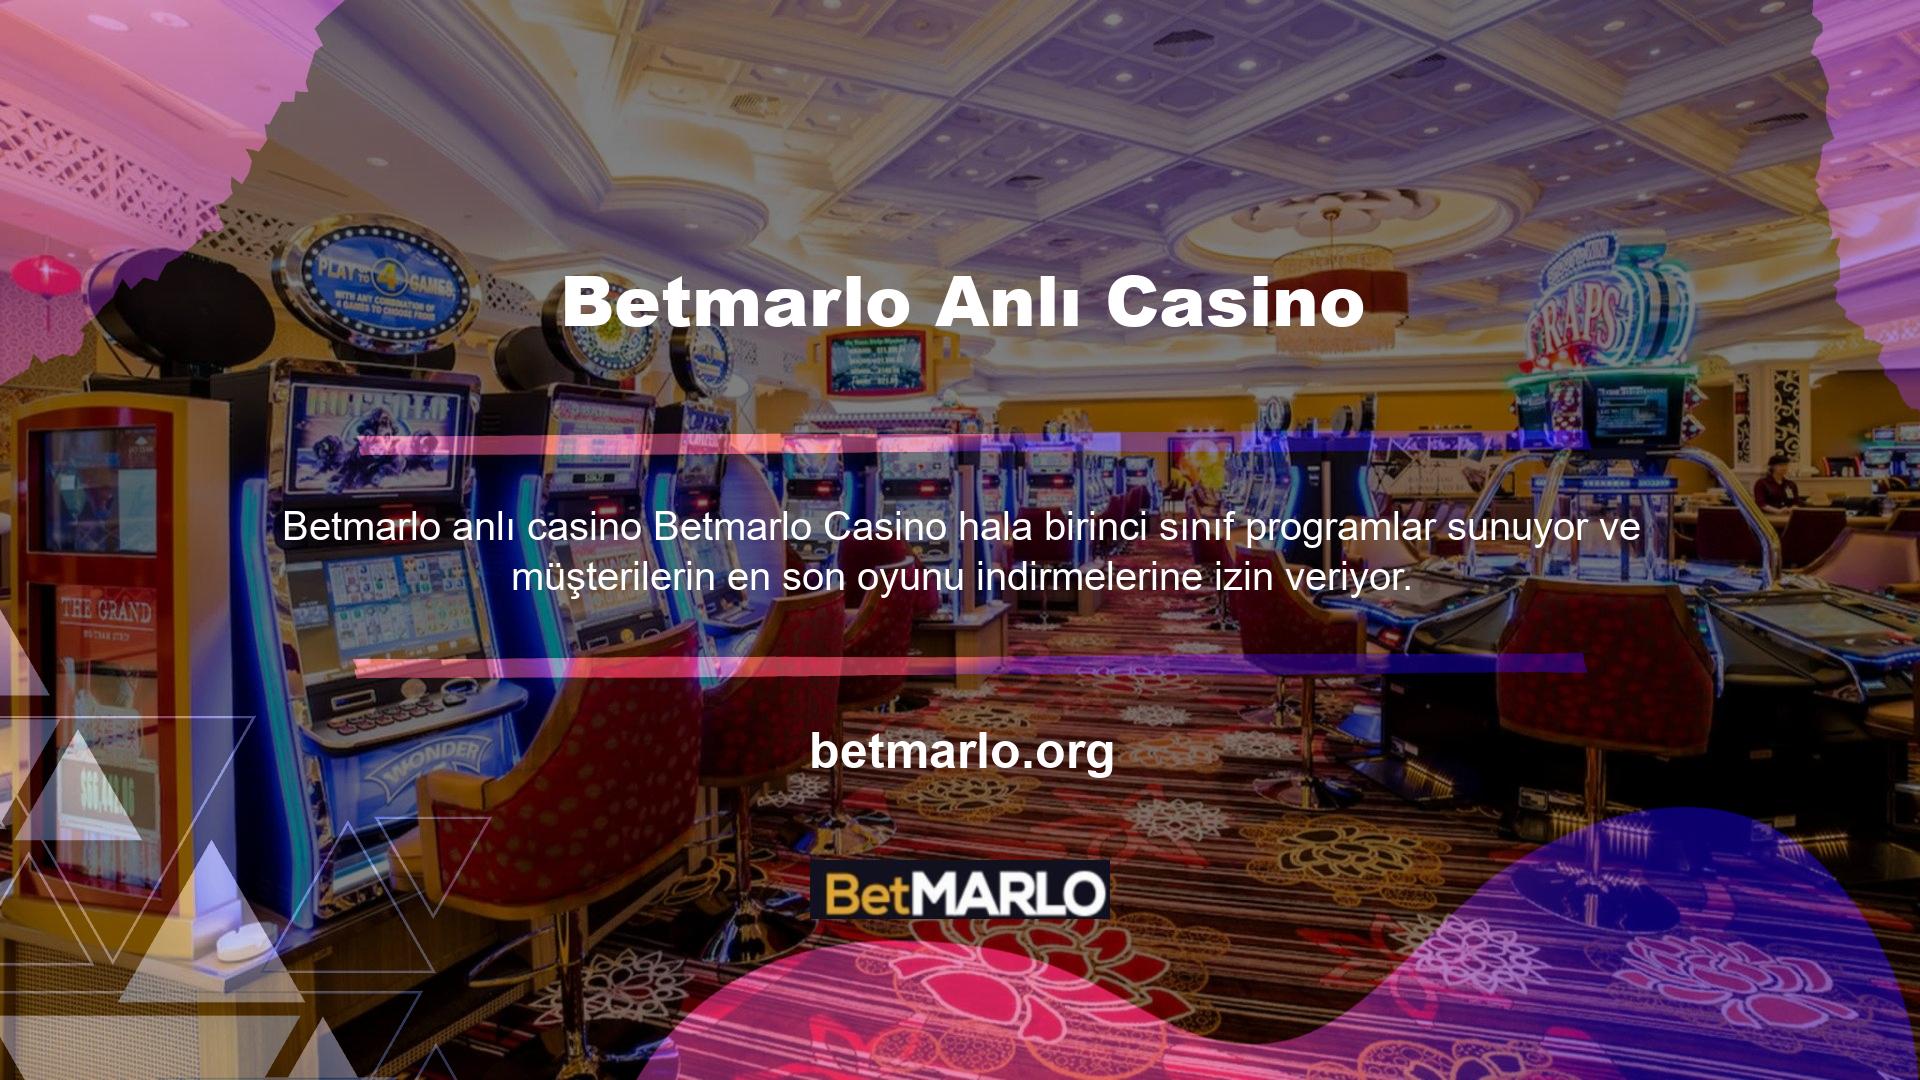 ' Betmarlo casino sayfası size büyülü bir dünyadaymışsınız izlenimi verir ve bir an önce oynamaya başlama isteği uyandırır